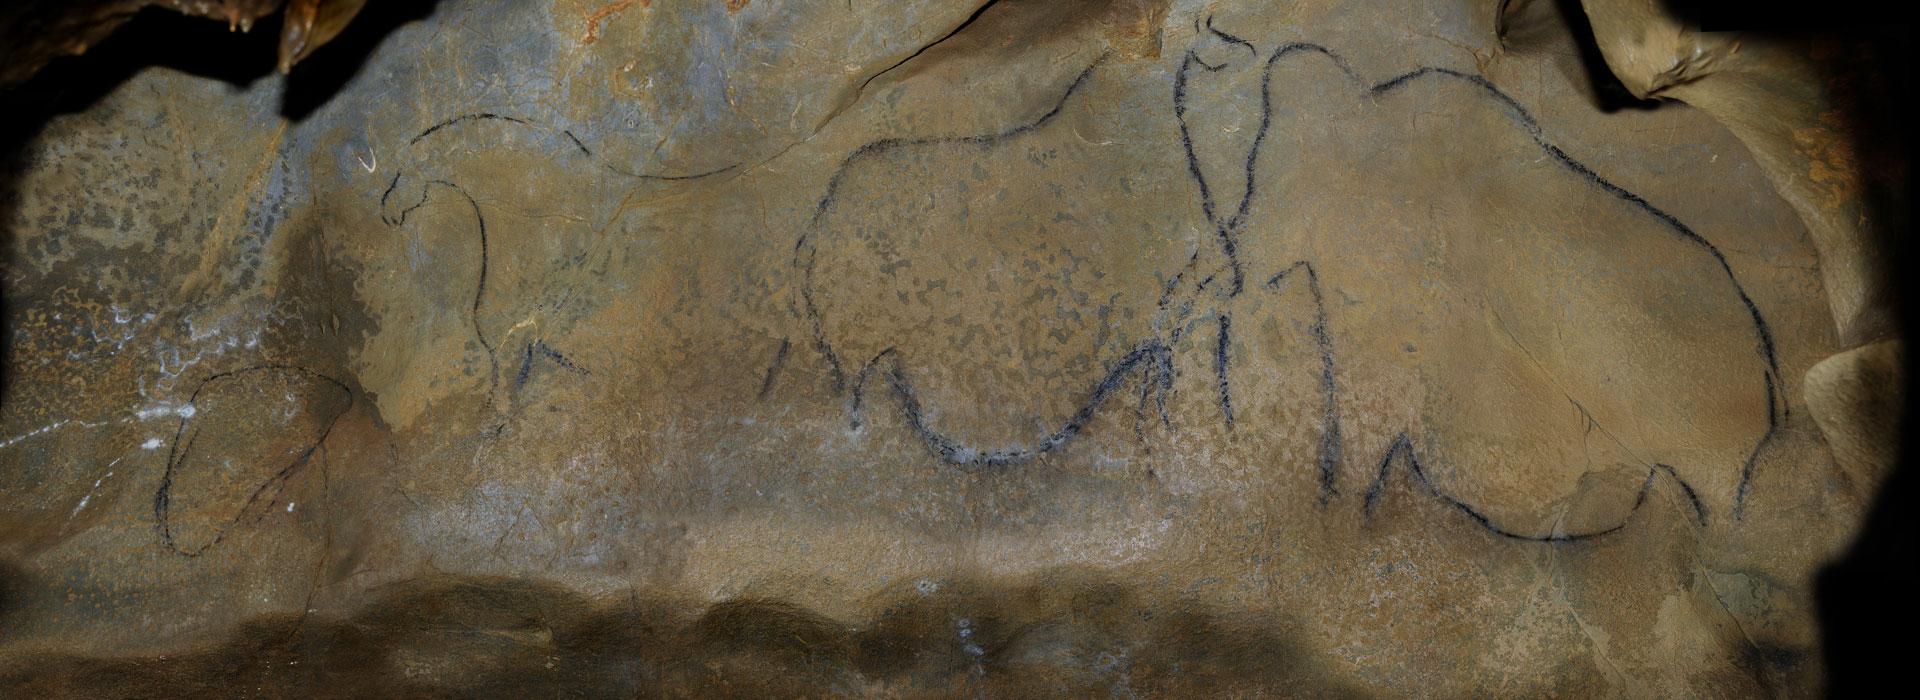 Fresque dans la grotte